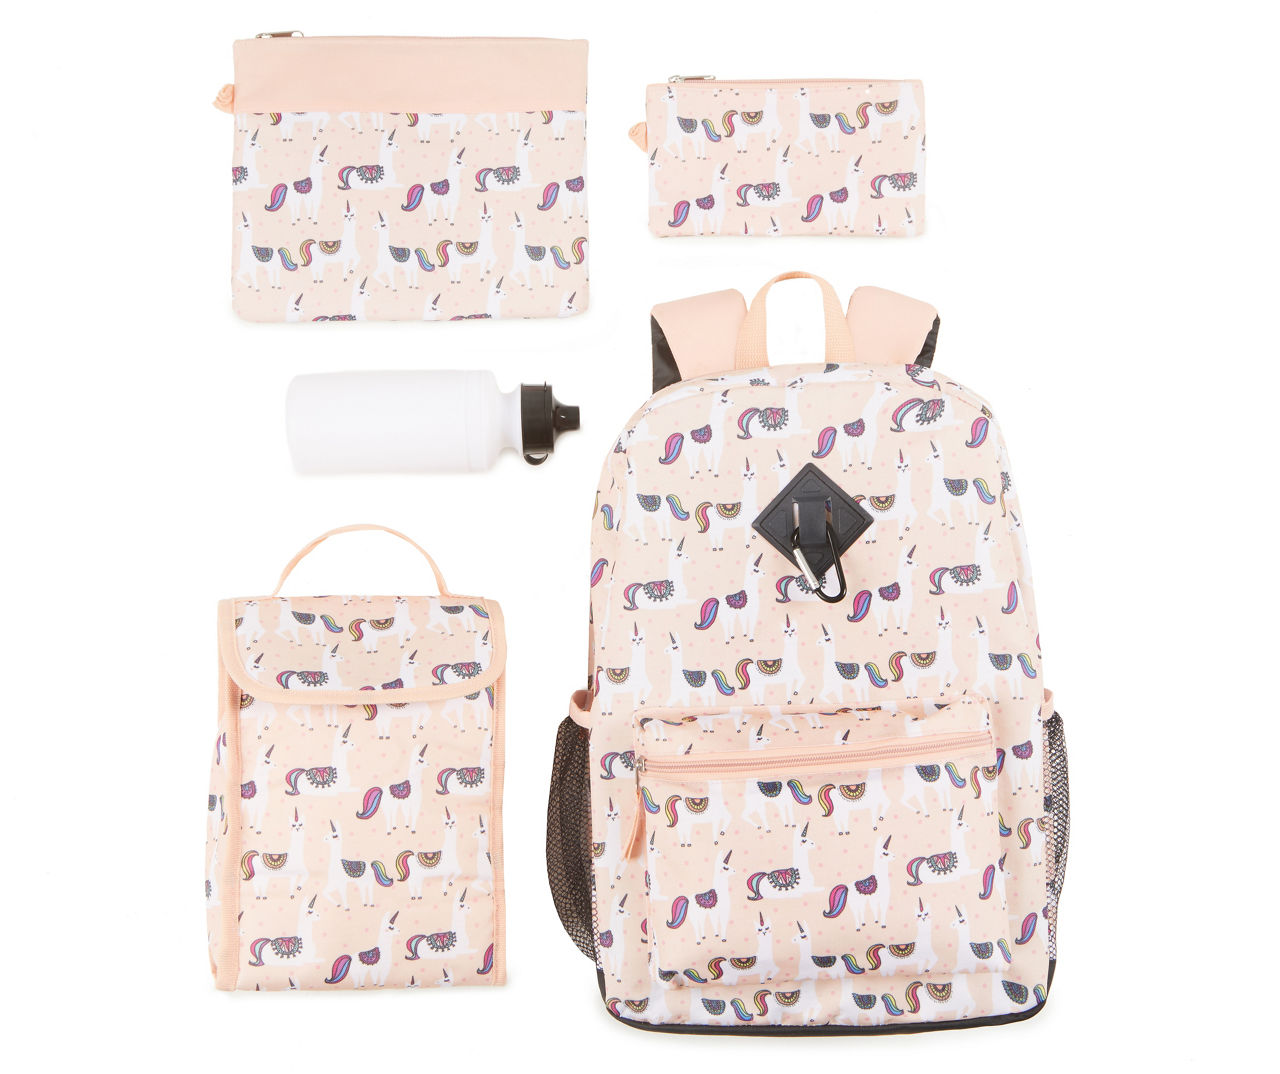 Llama Print 6-Piece Backpack Set | Big Lots